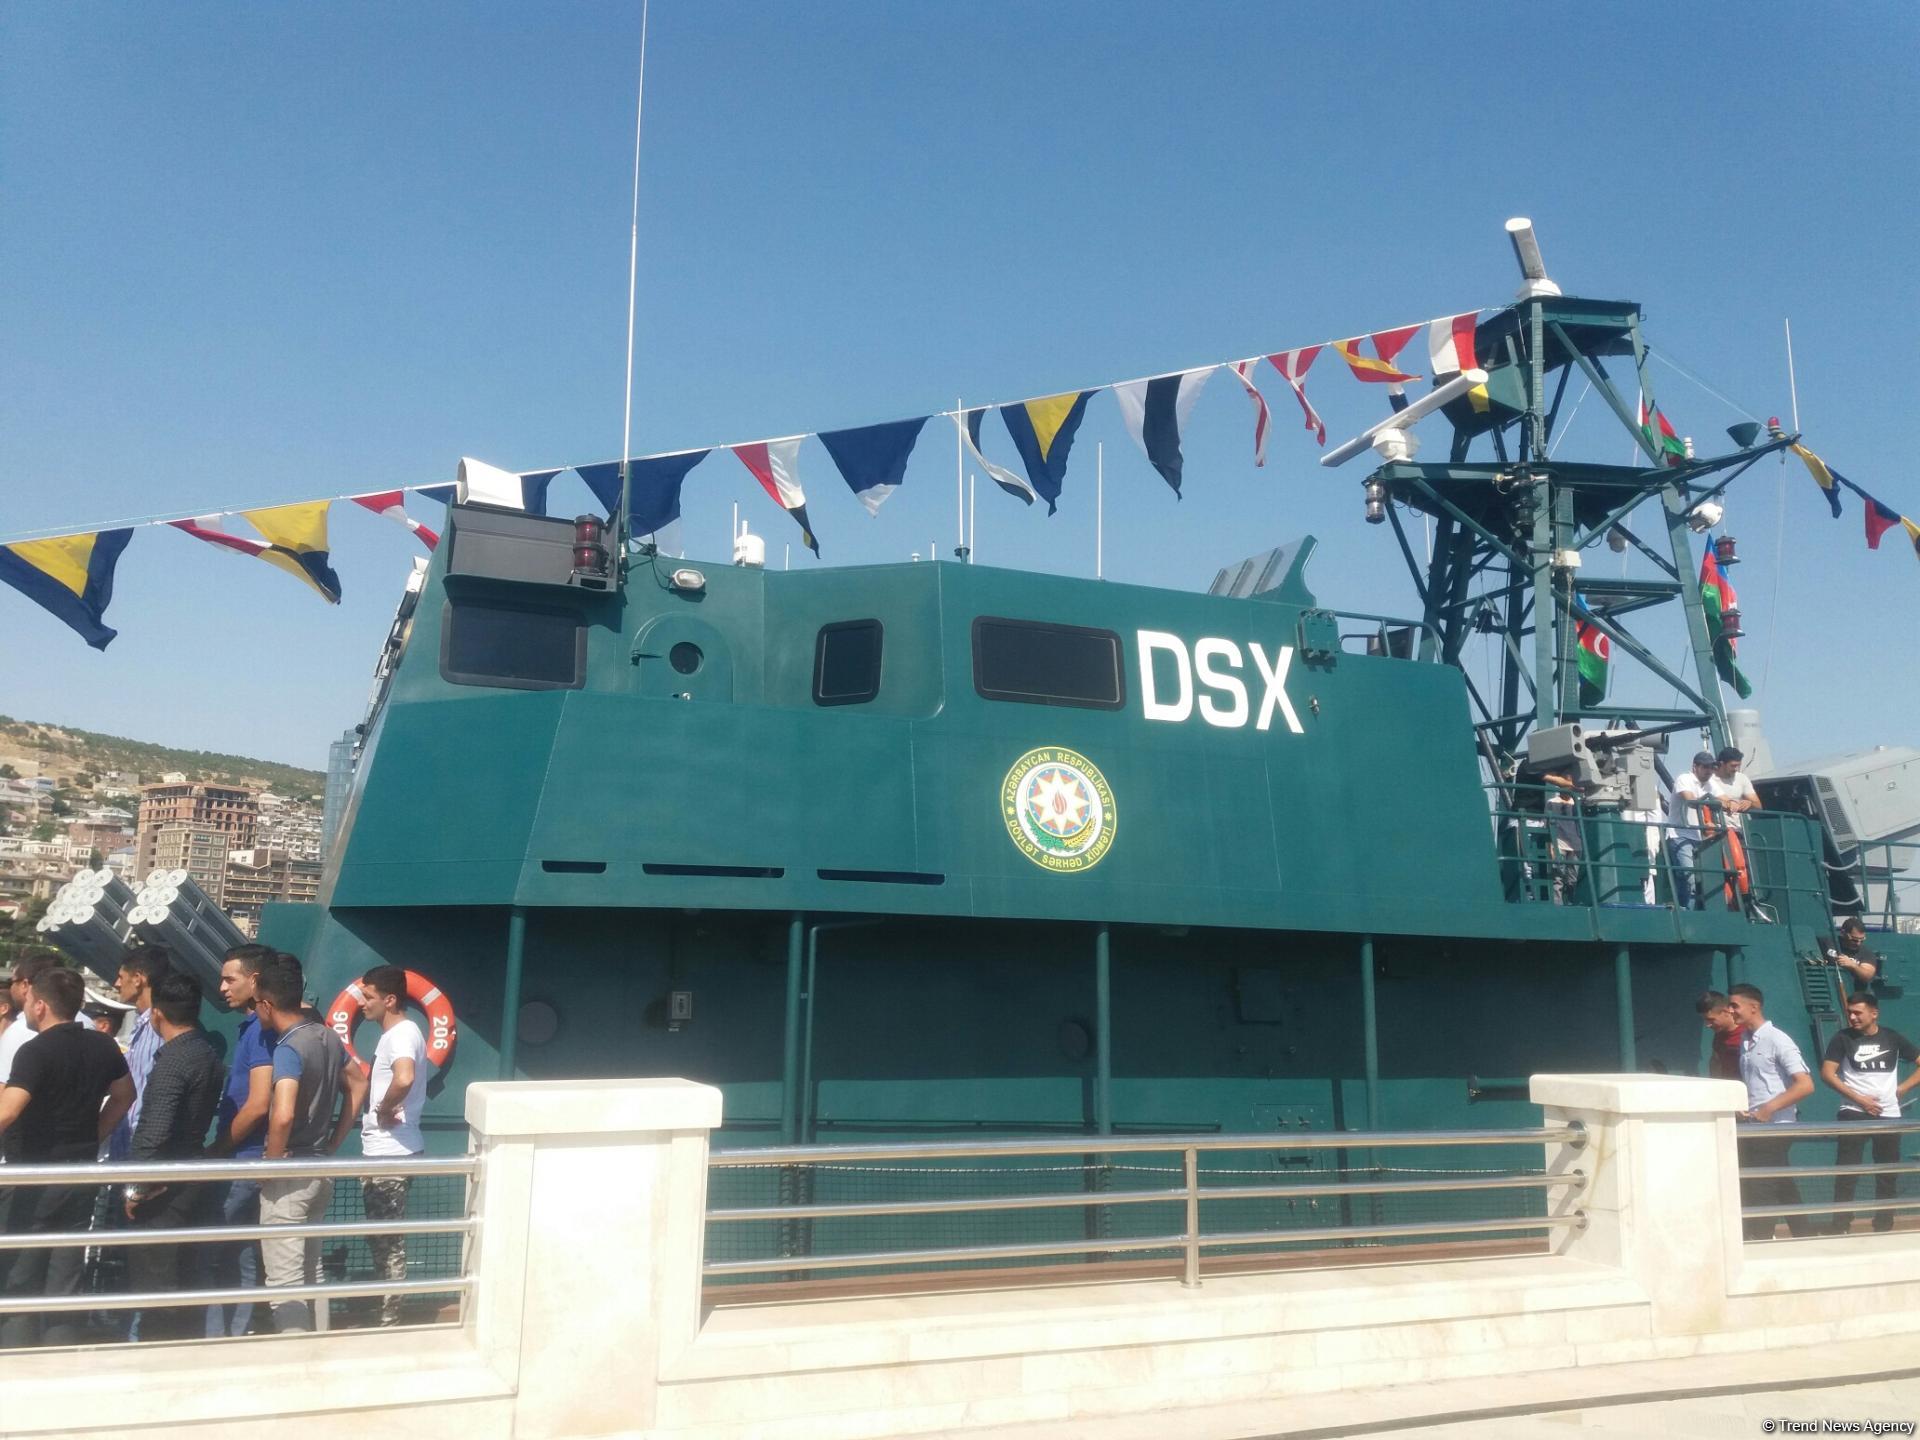 Azərbaycan istehsalı olan "Tufan" gəmisinin nümayişi olub (FOTO)